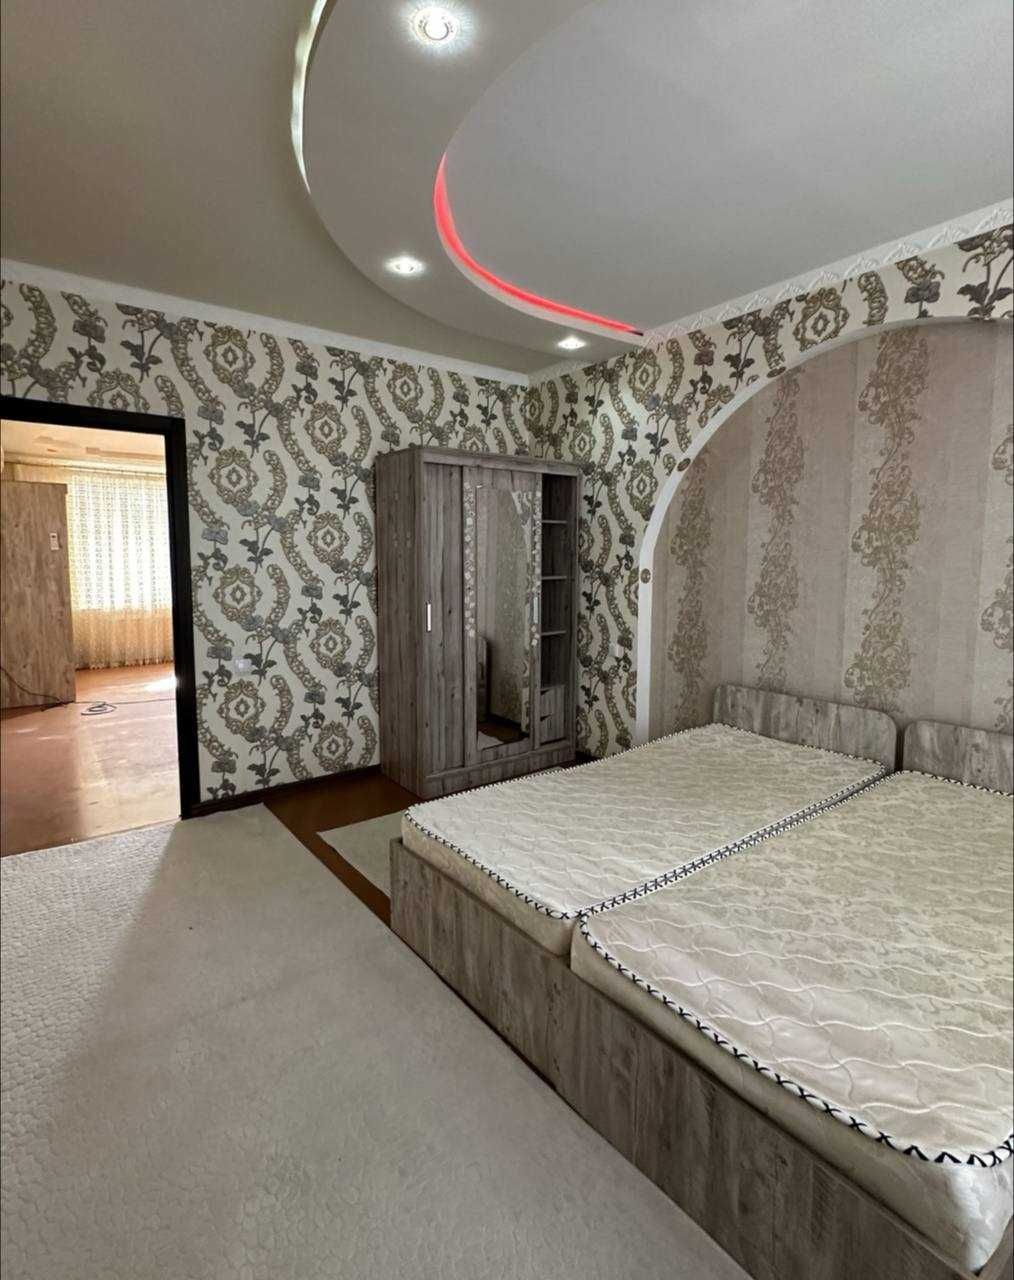 Продается дом 3 соток с мебелью и техникой 3сот(Зенит)в Юнусабадском р